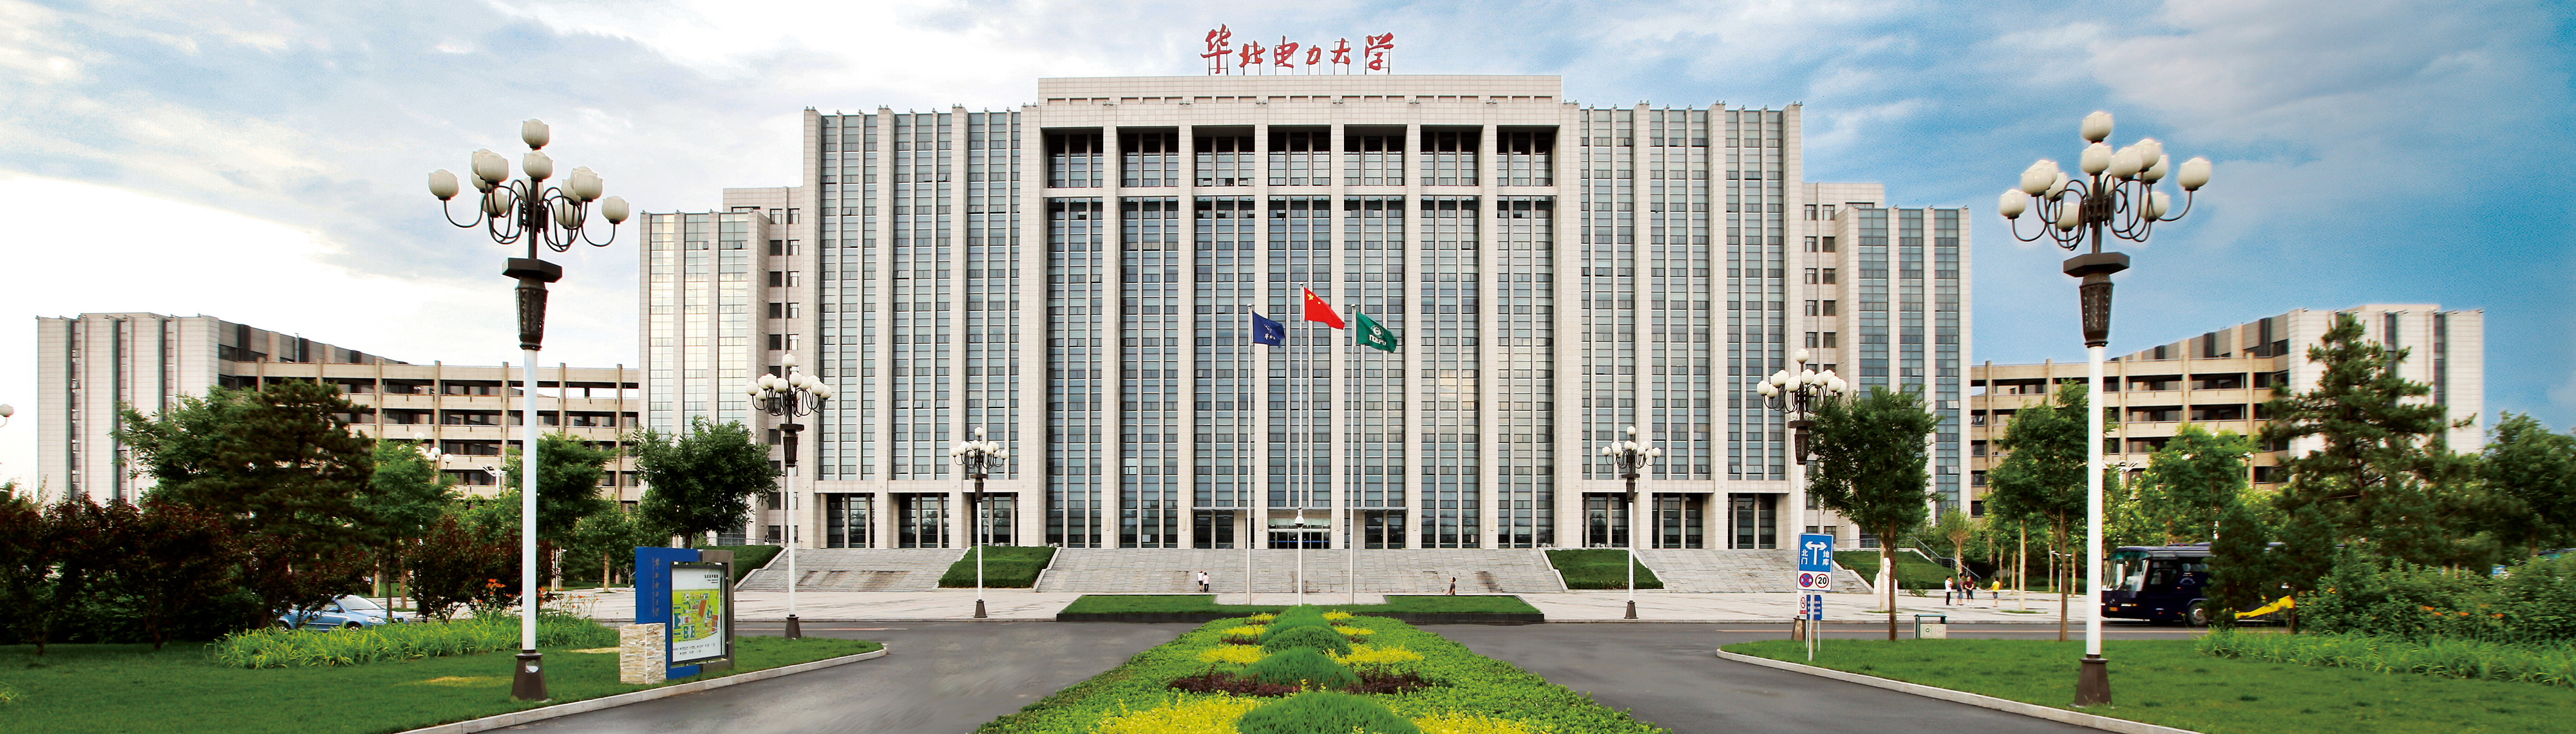 華北電力大學